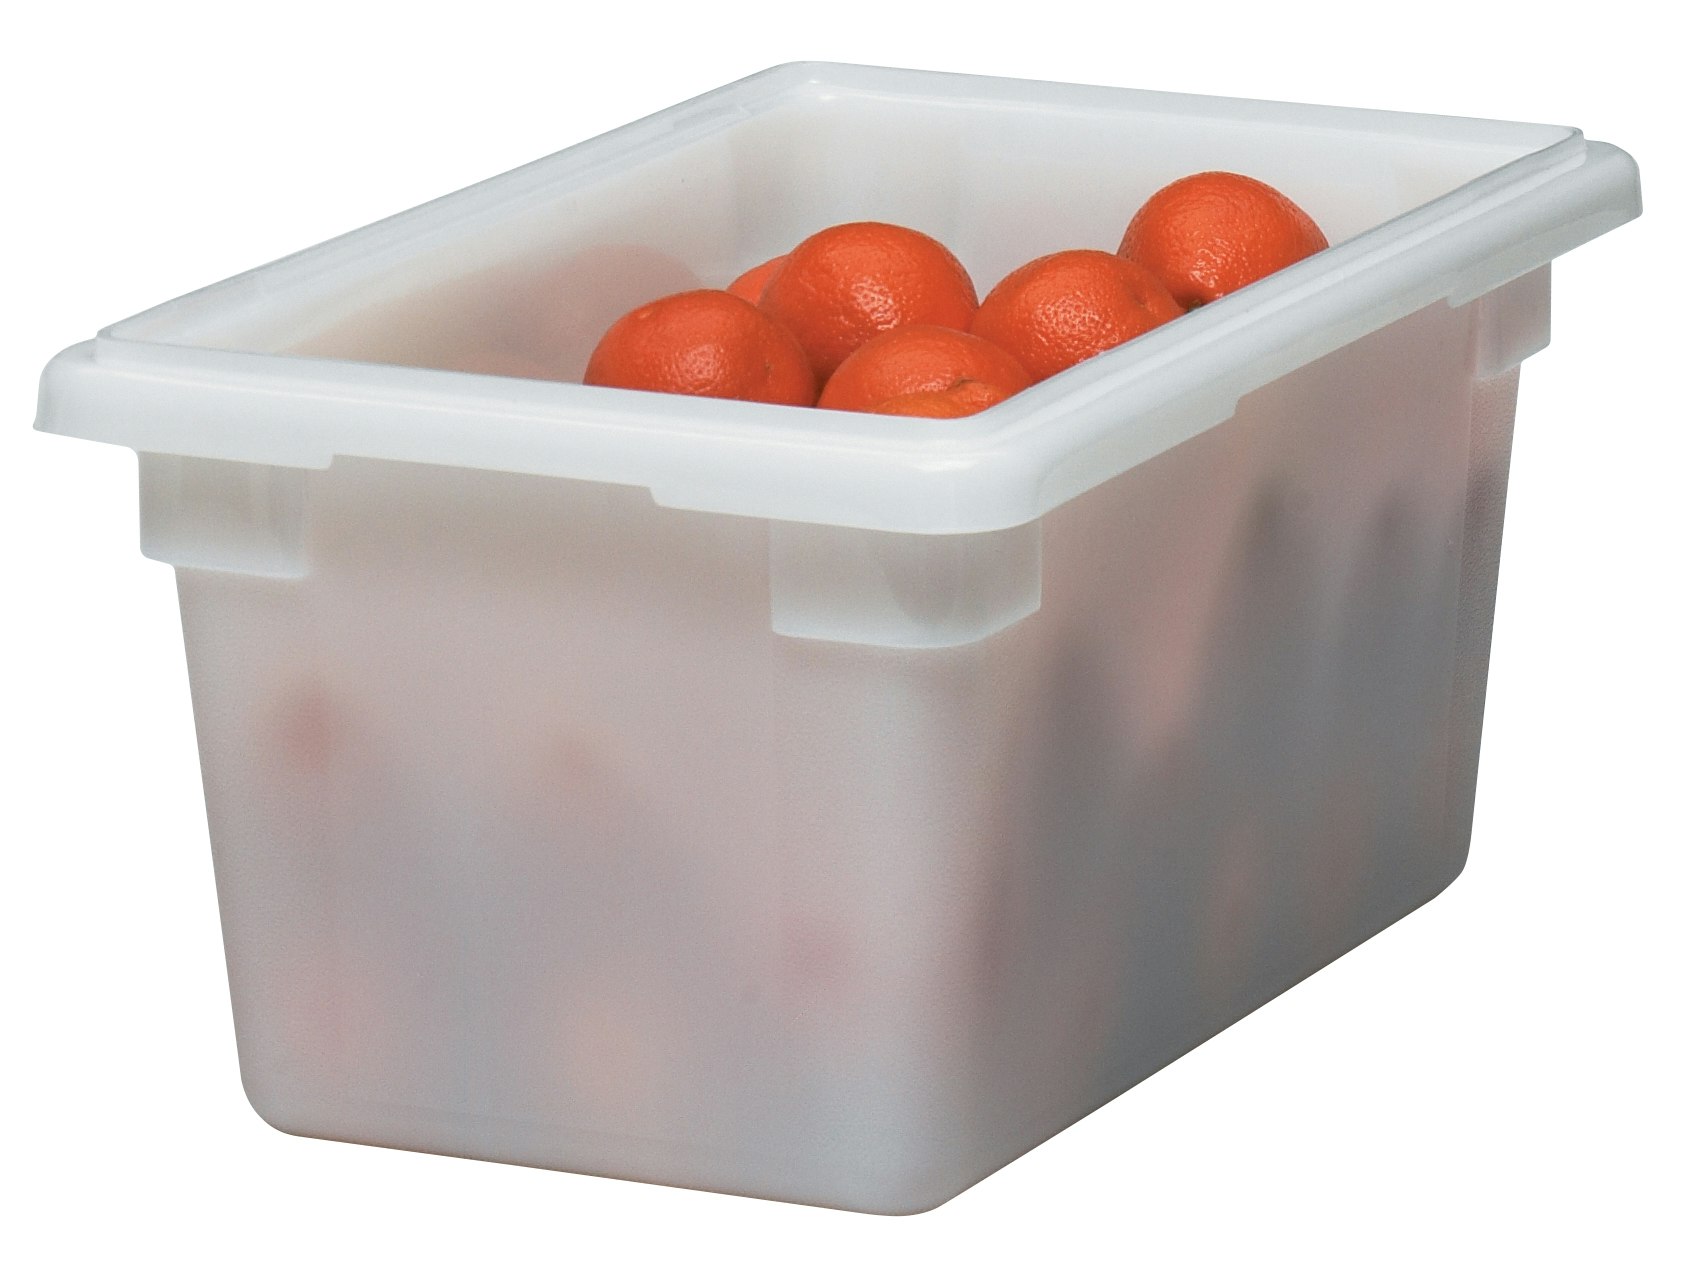 Oyfel Cajas de Conservación contenedor alimentaires almacenaje ácido la Gastronomía 